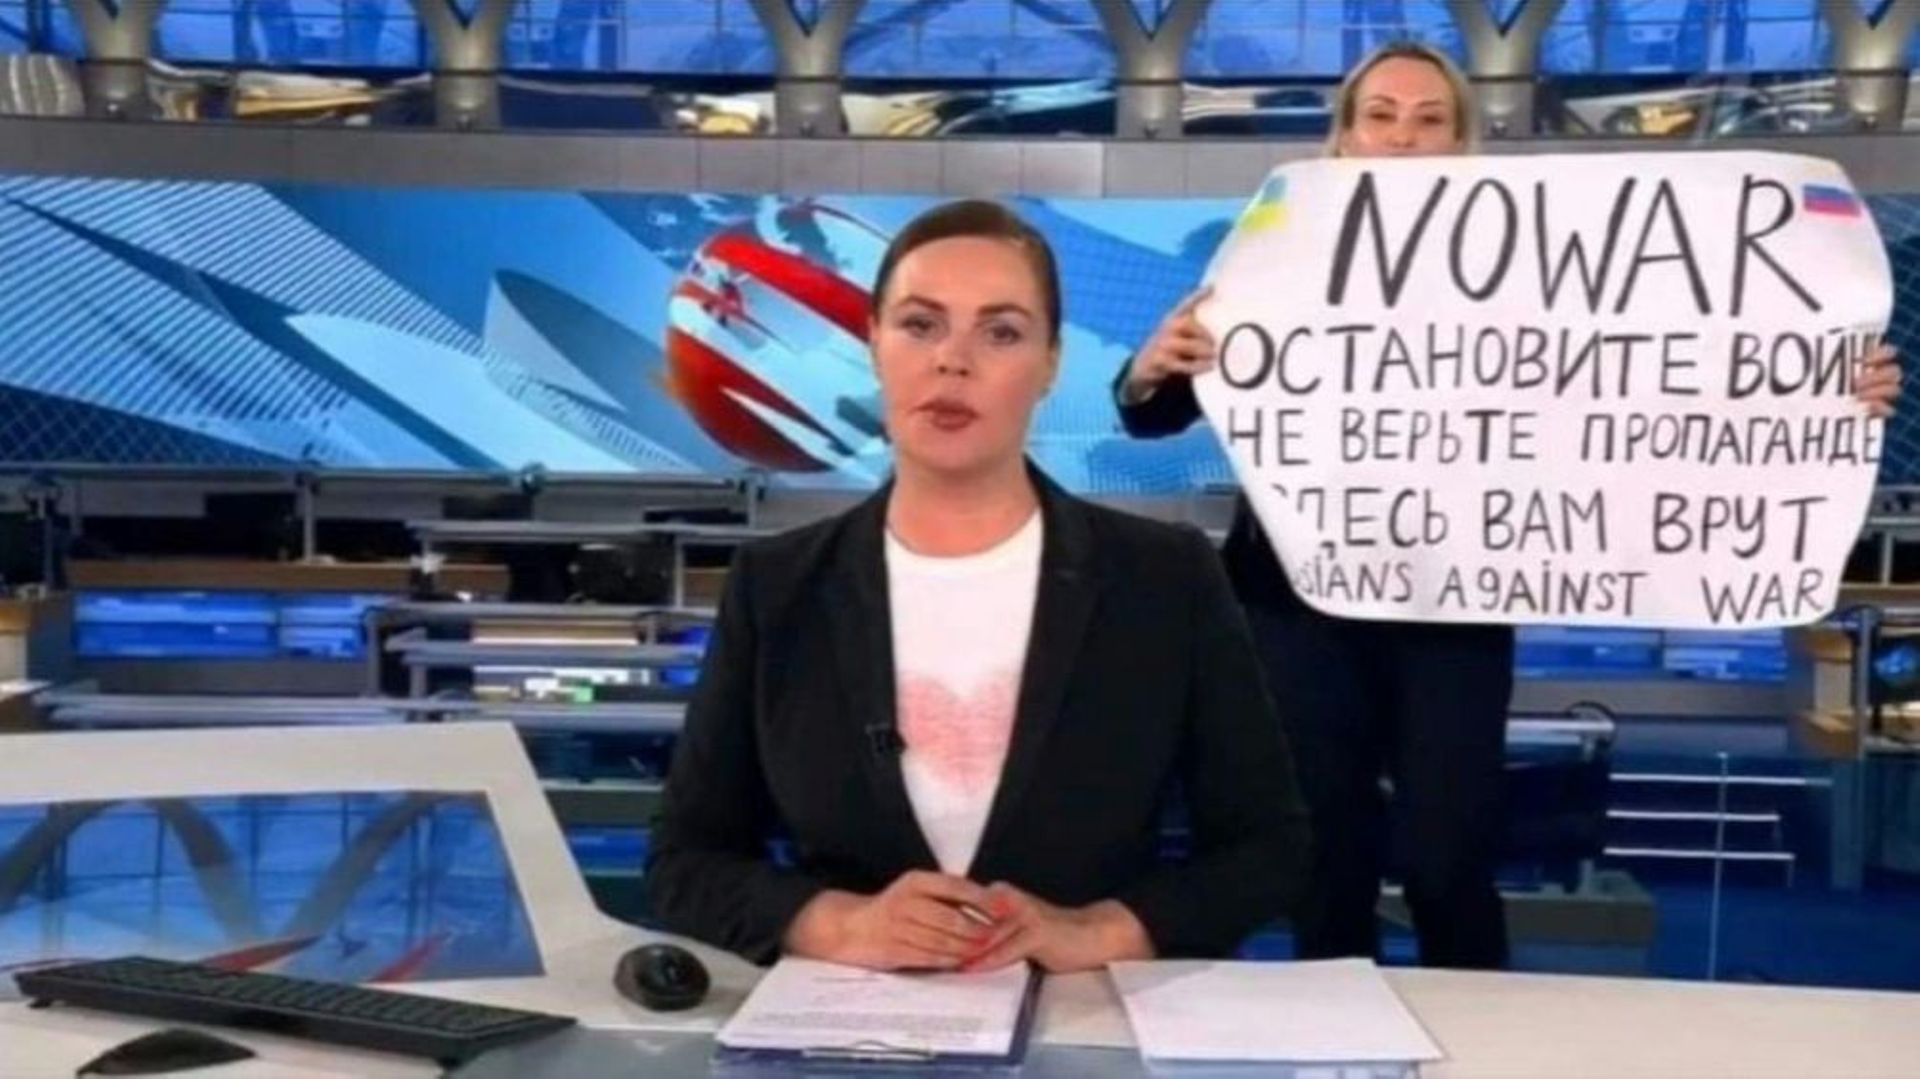 Une capture vidéo du 15 mars 2022 montre Marina Ovsyannikova tenant une pancarte "Non à la guerre. Ne croyez pas la propagande. On vous ment, ici", juste derrière la présentatrice de la chaîne russe Channel One